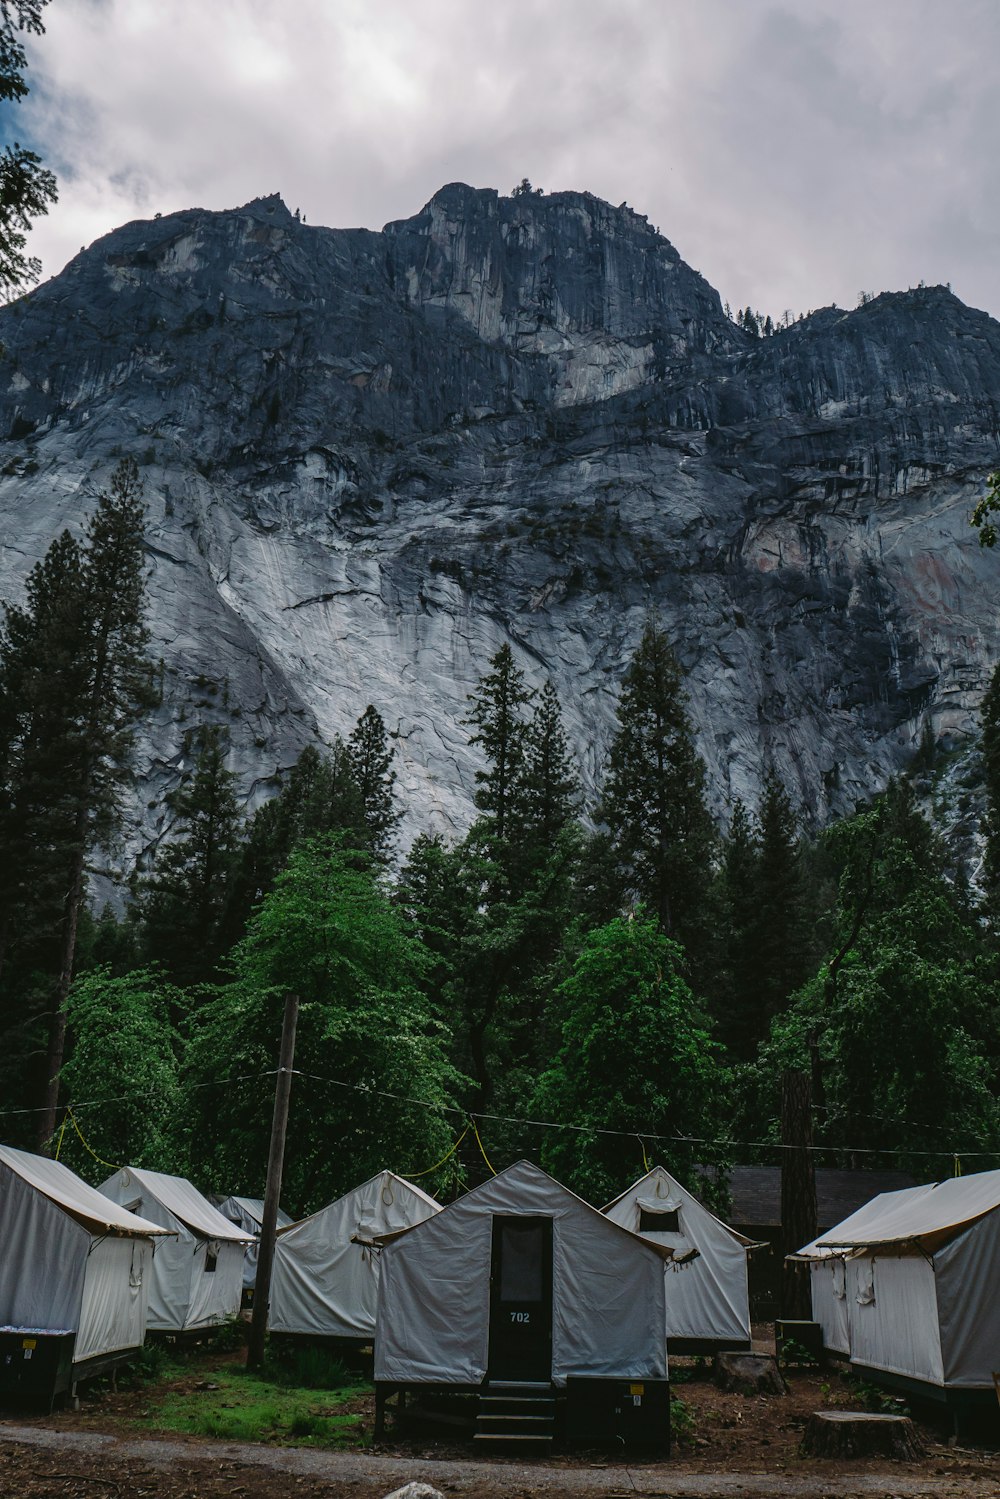 Ver fotografía de tiendas de campaña de la Casa Blanca cerca de los árboles bajo la montaña negra y gris